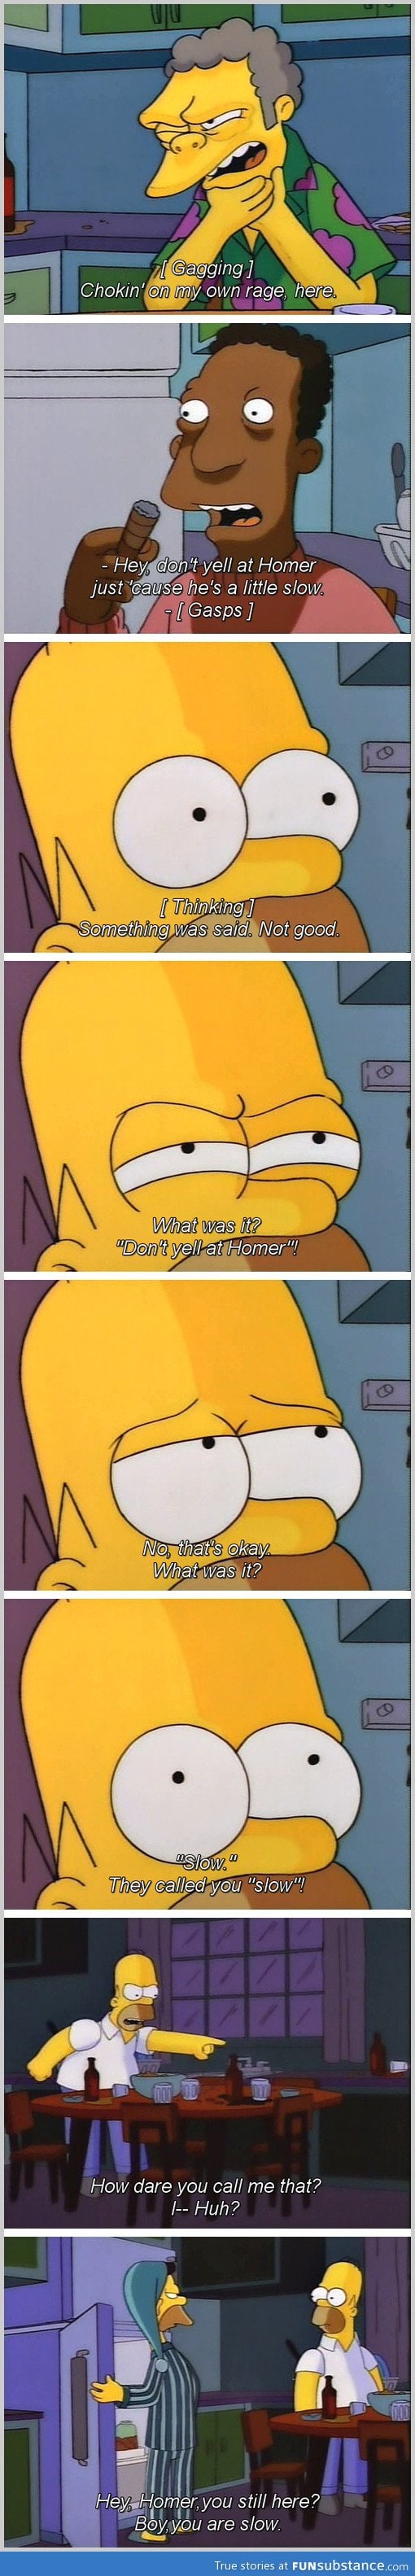 Don't yell at Homer